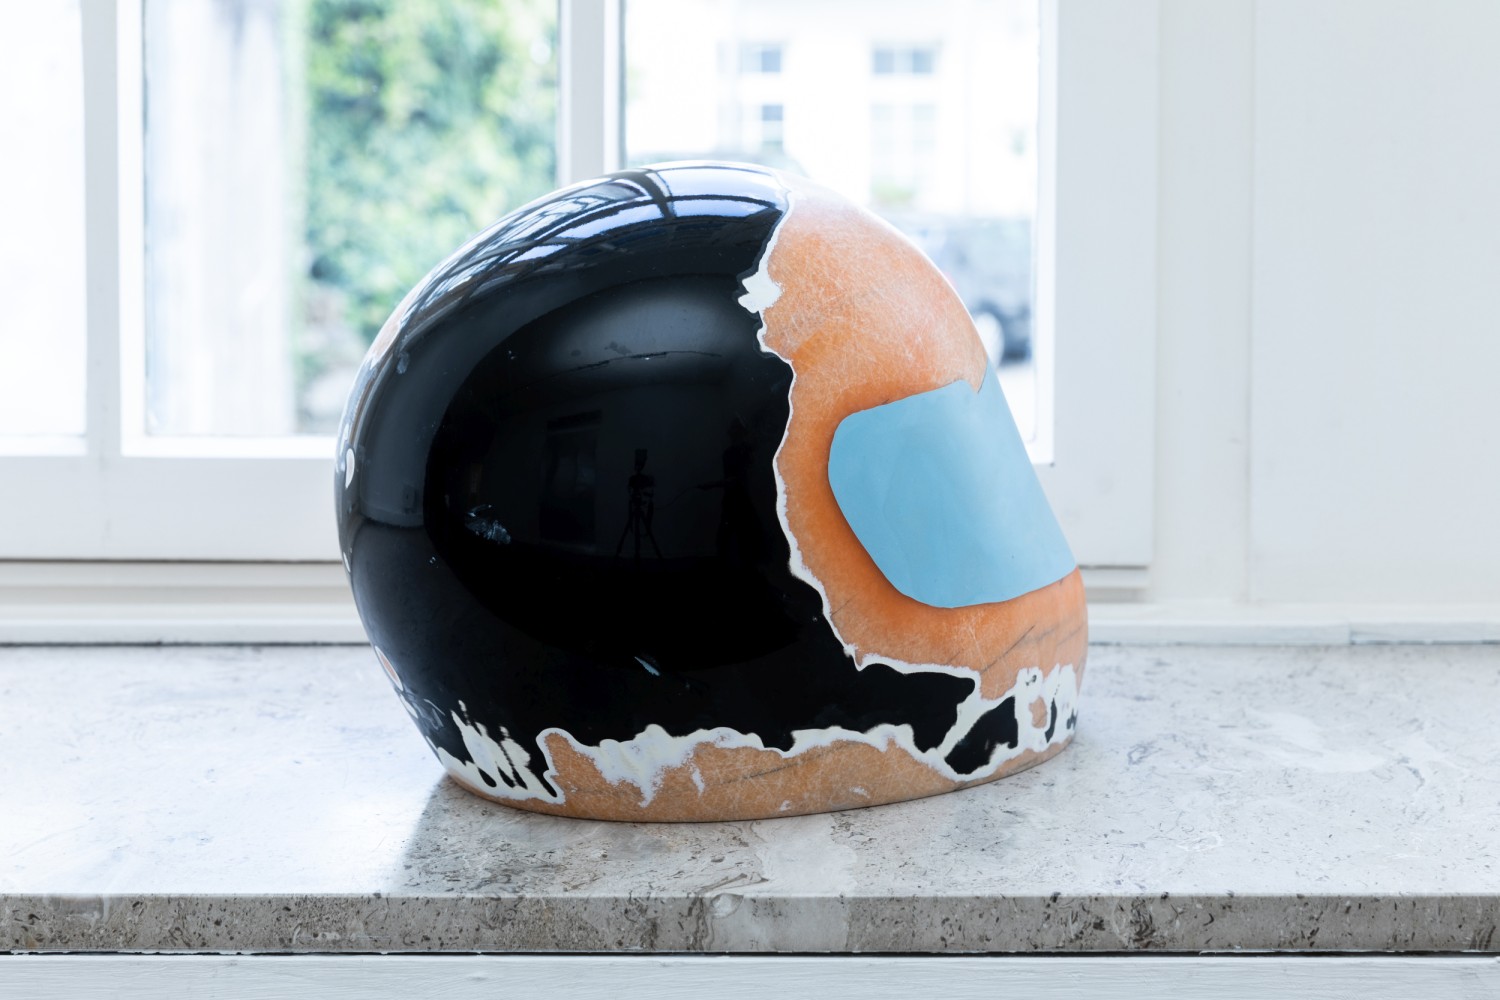 Helmet object by Zach Furniss.